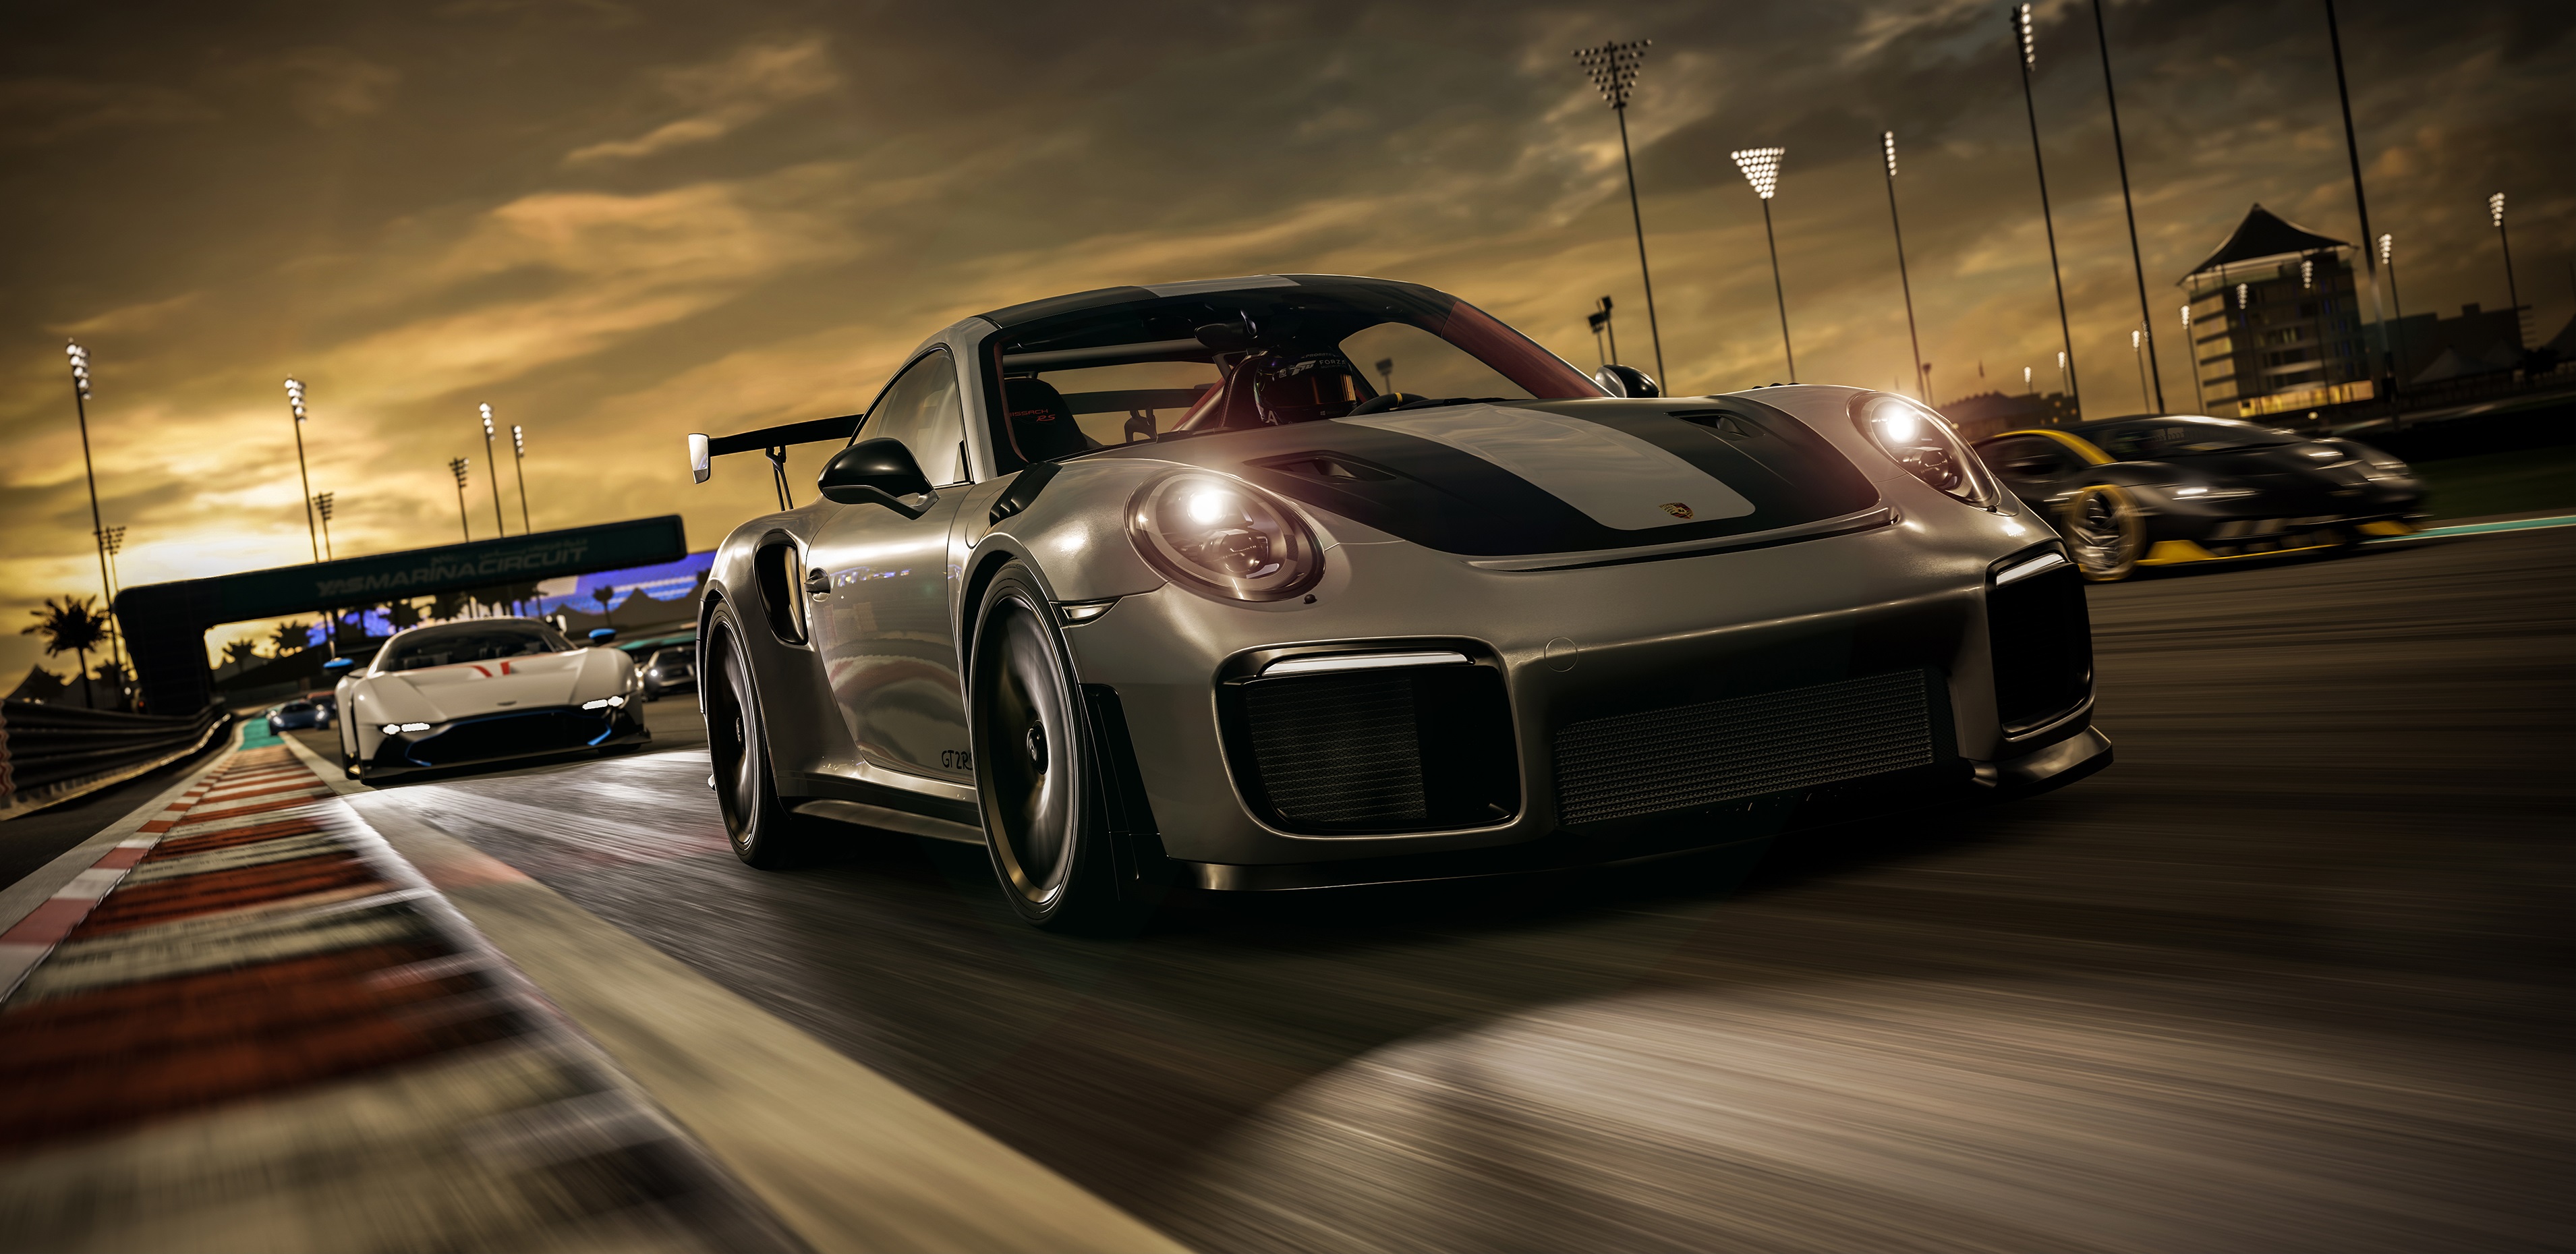 Porsche car in Forza 7